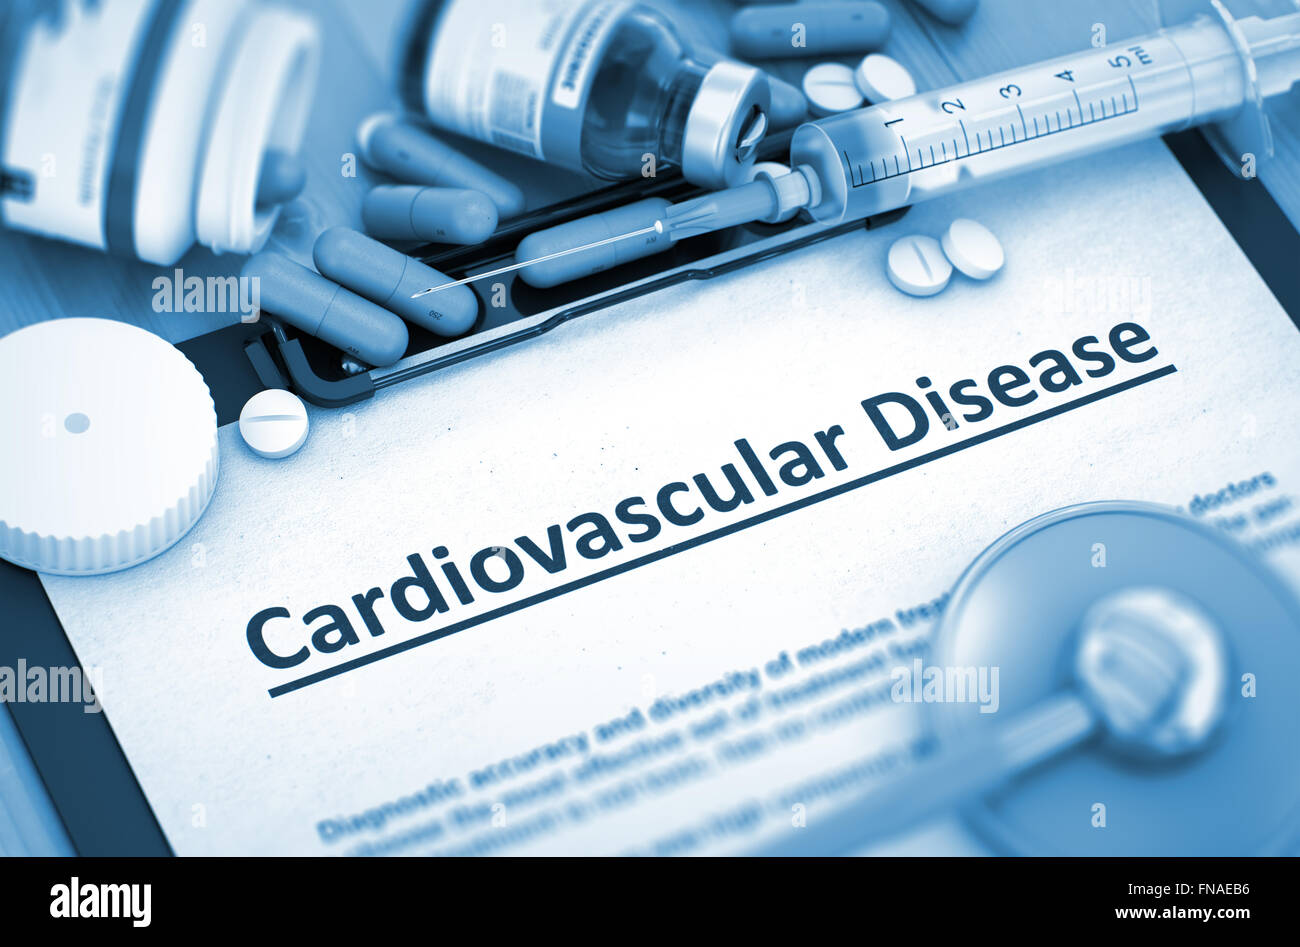 Cardiovascular Disease. Medical Concept. Stock Photo